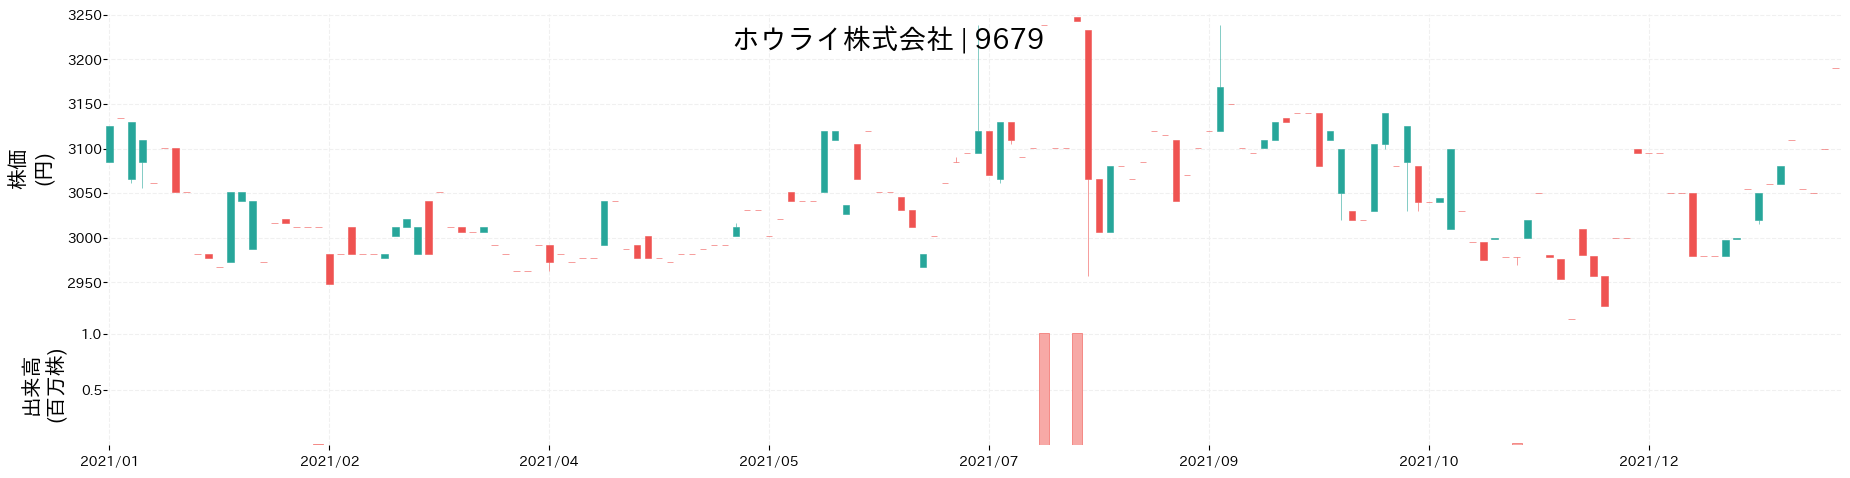 ホウライの株価推移(2021)